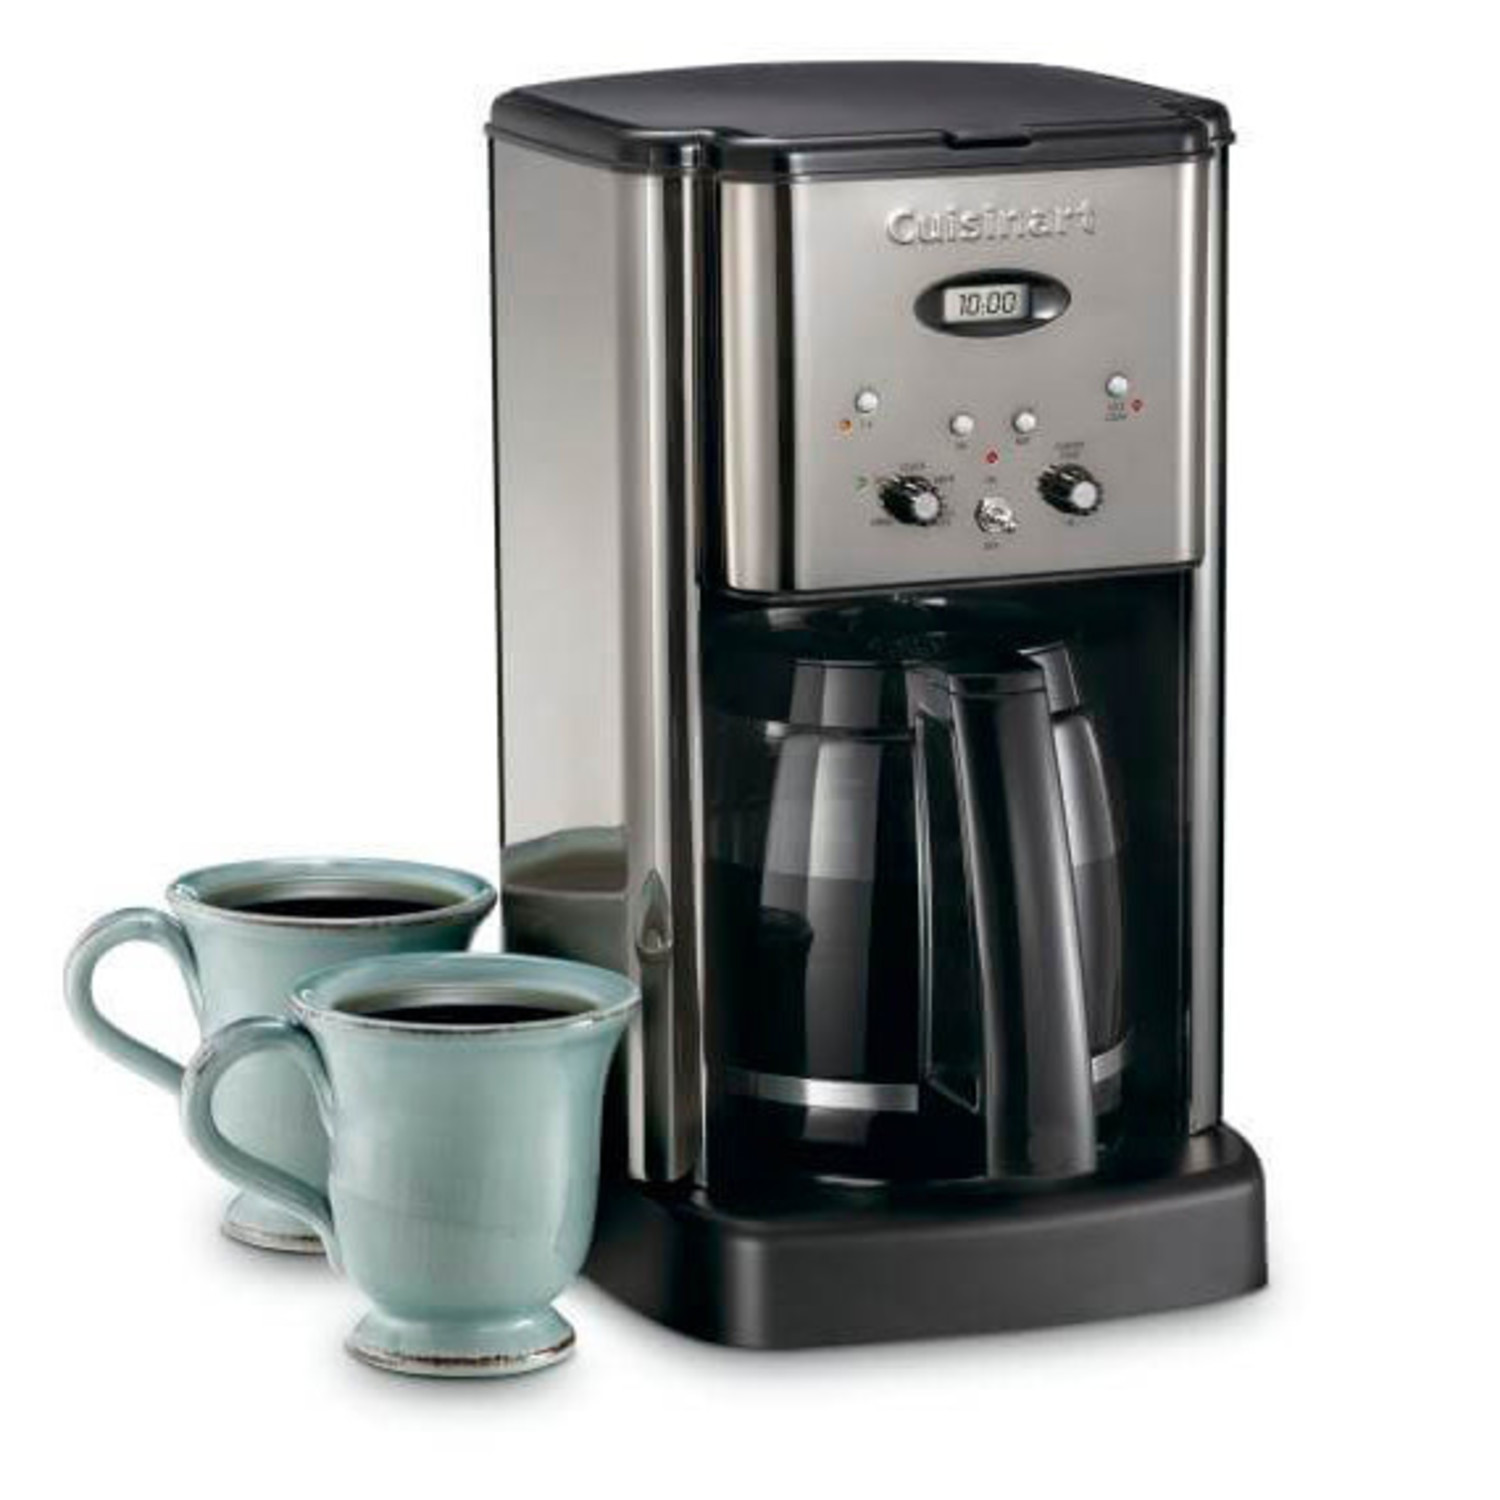 https://cdn.shoplightspeed.com/shops/633447/files/38372684/1500x4000x3/cuisinart-12-cup-drip-coffee-maker.jpg